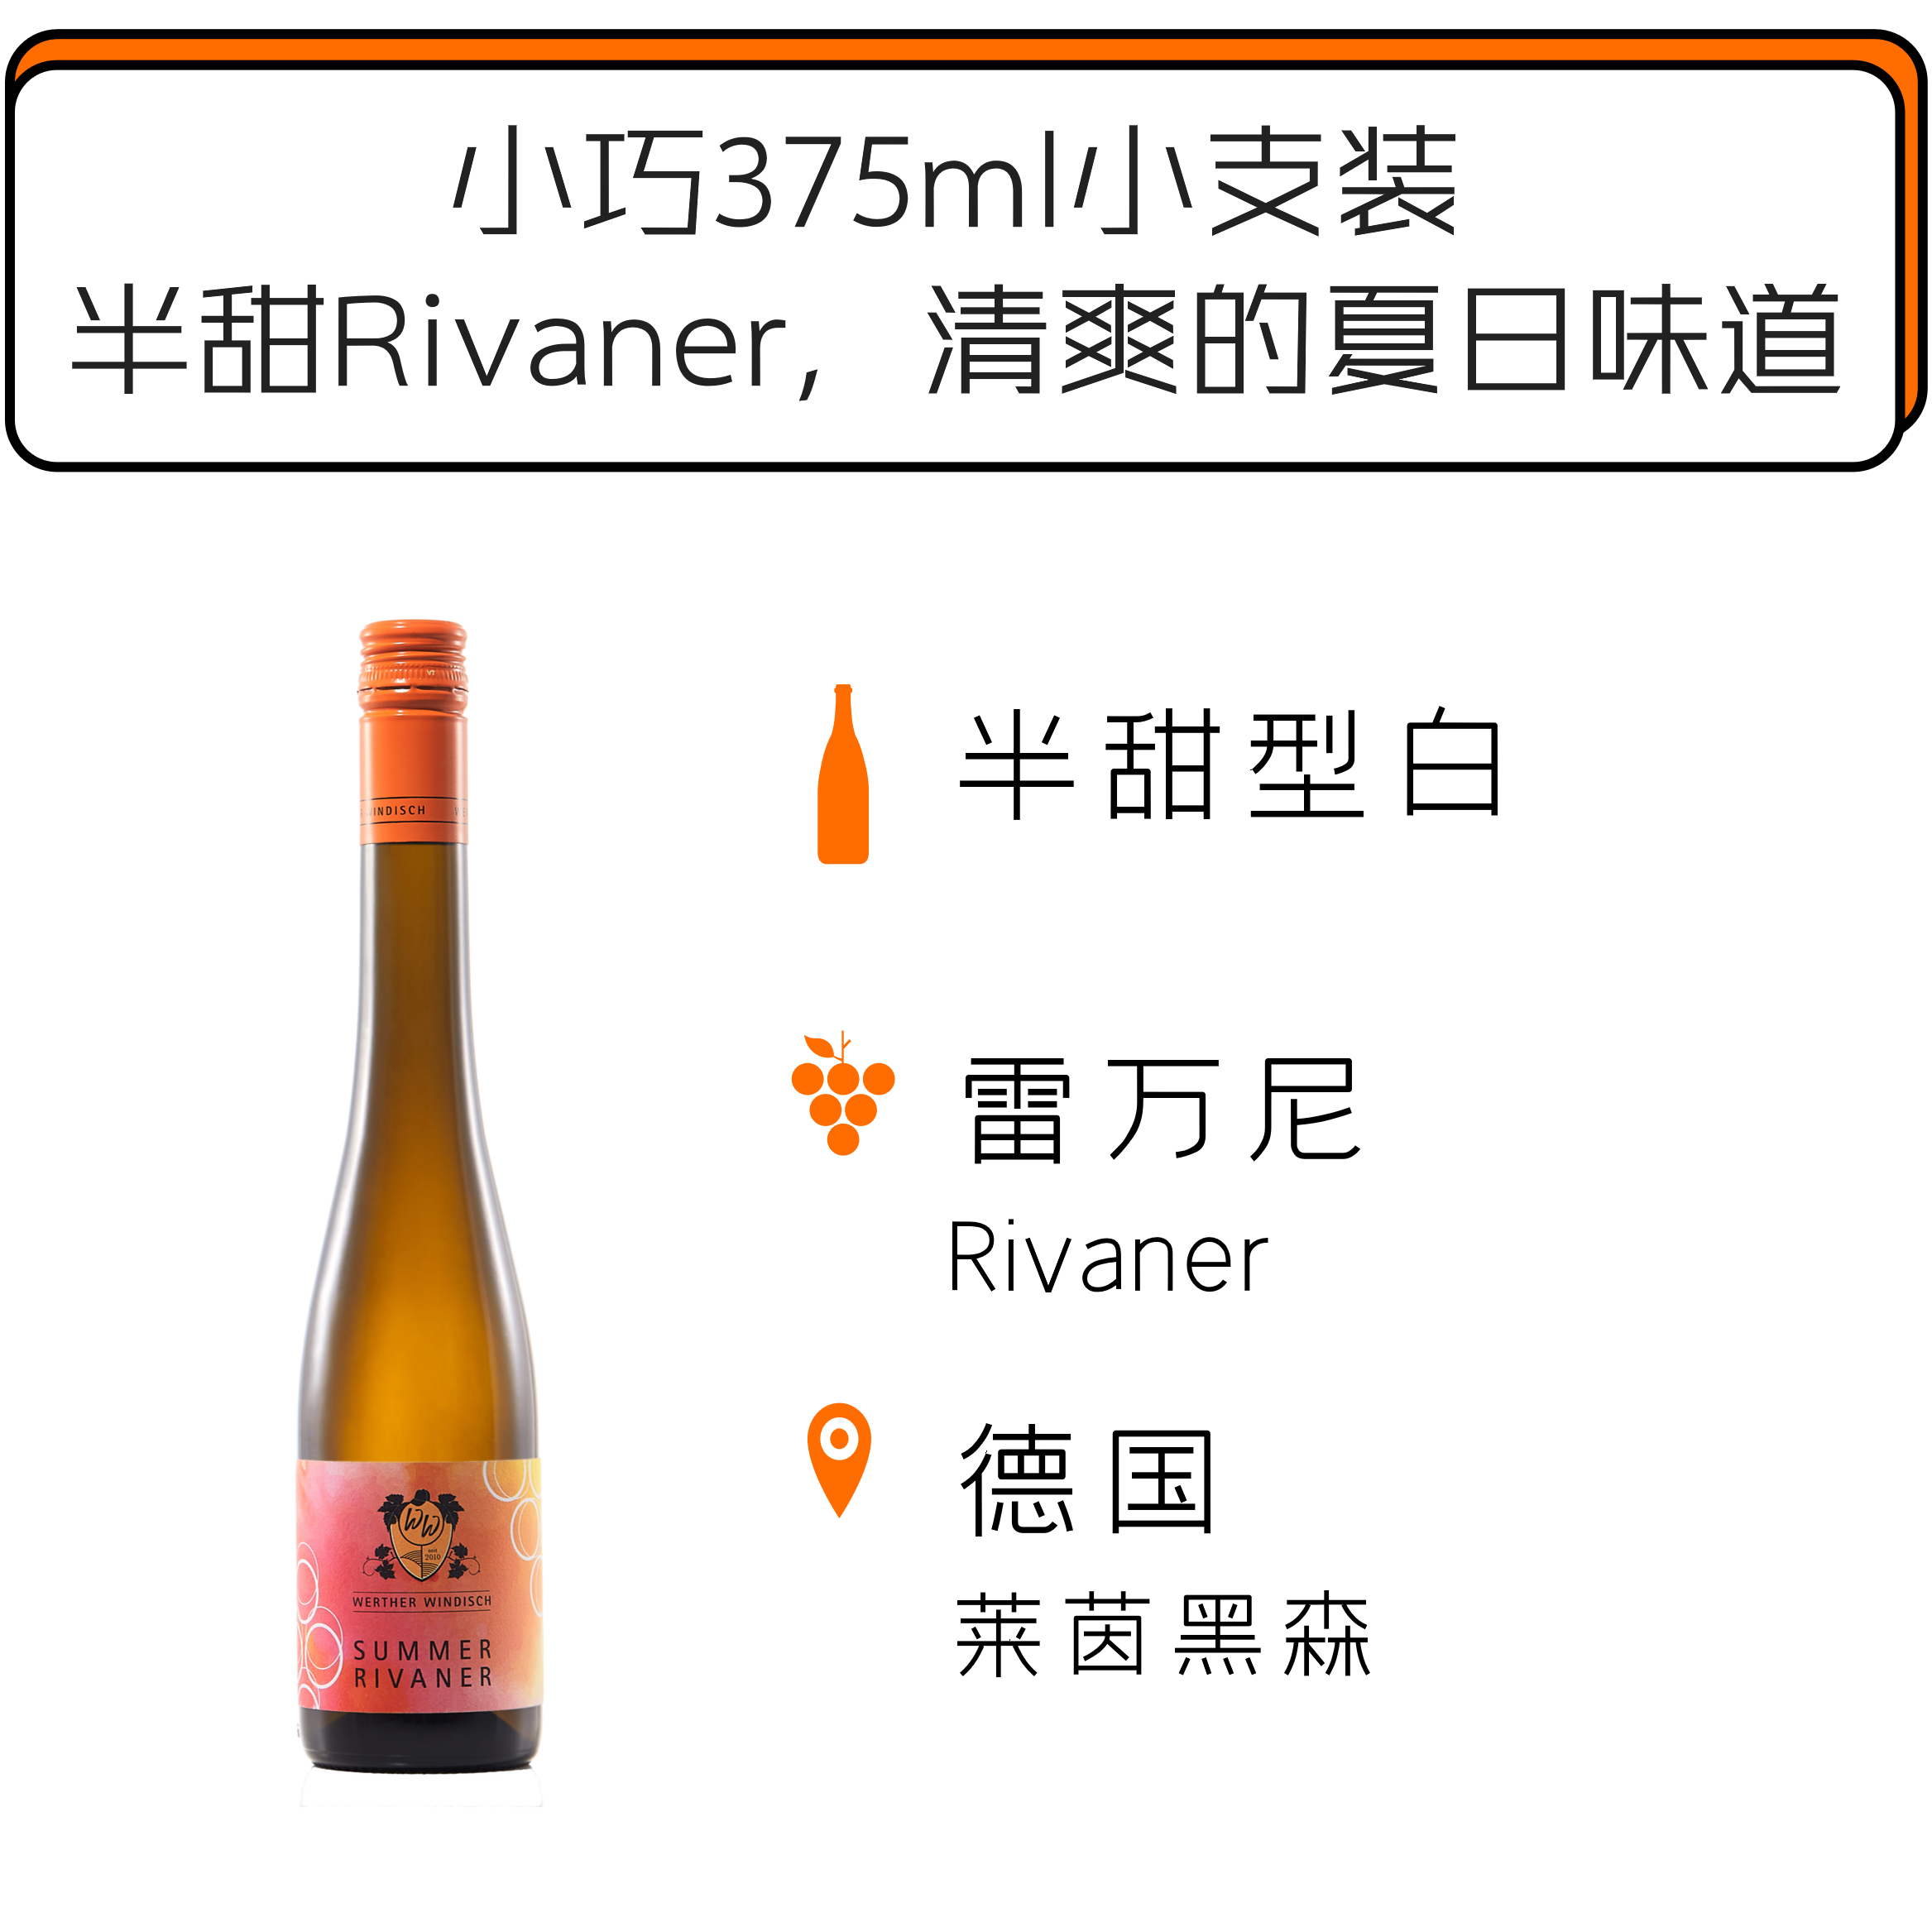 【天津发货】2021威尔特温迪施夏日雷万尼半甜型白葡萄酒 Werther Windisch Summer Rivaner 2019